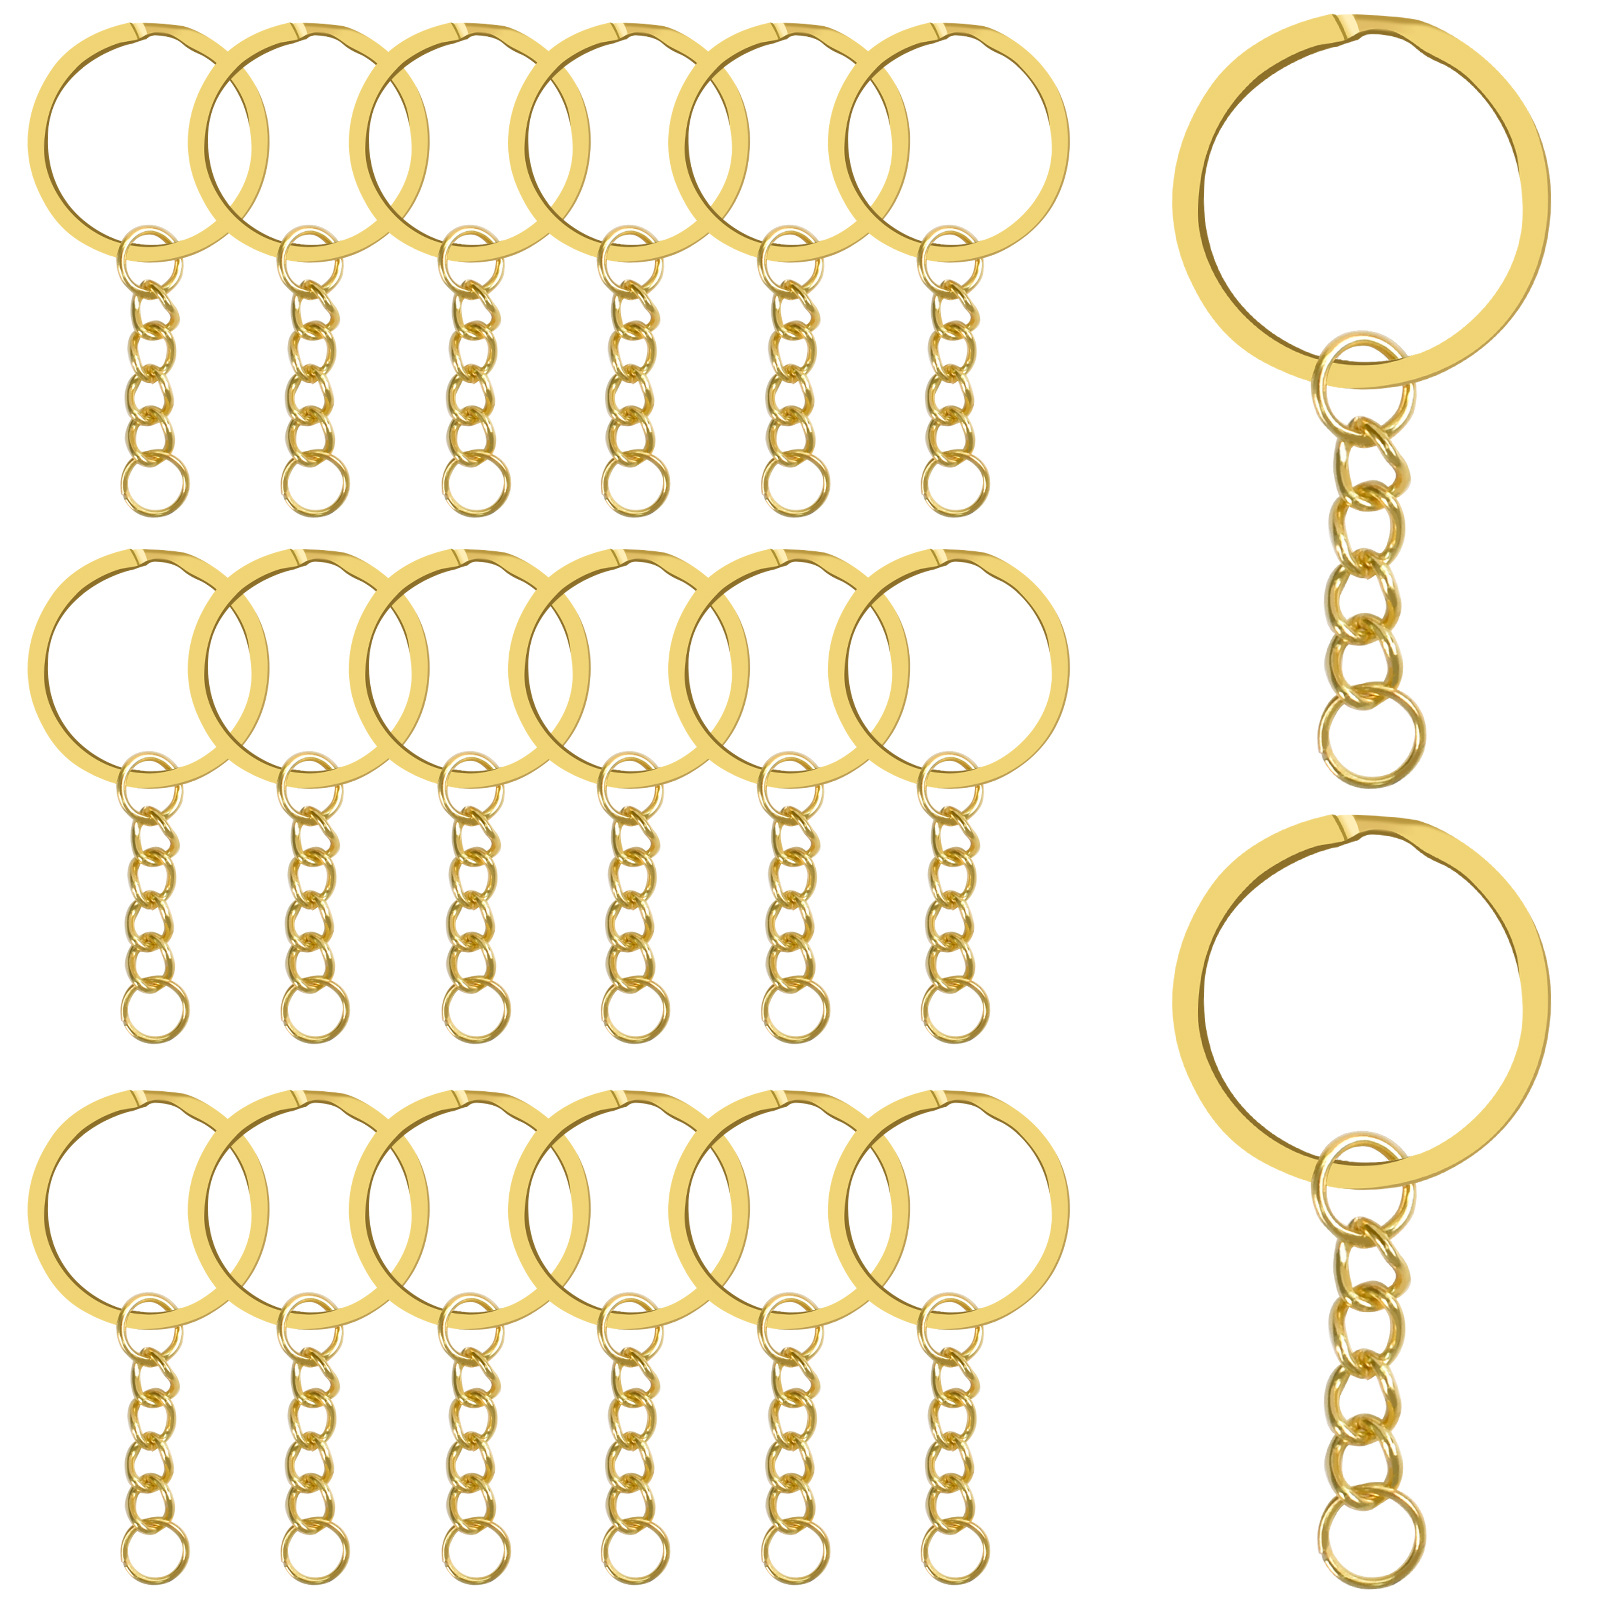 OATIPHO 10pcs Key Ring Key Holder Keychain DIY Key Chains Key Chain Rings  Bulk Metal Key Chain Clips Key Chain Rings for Crafts Metal Key Chain Hooks